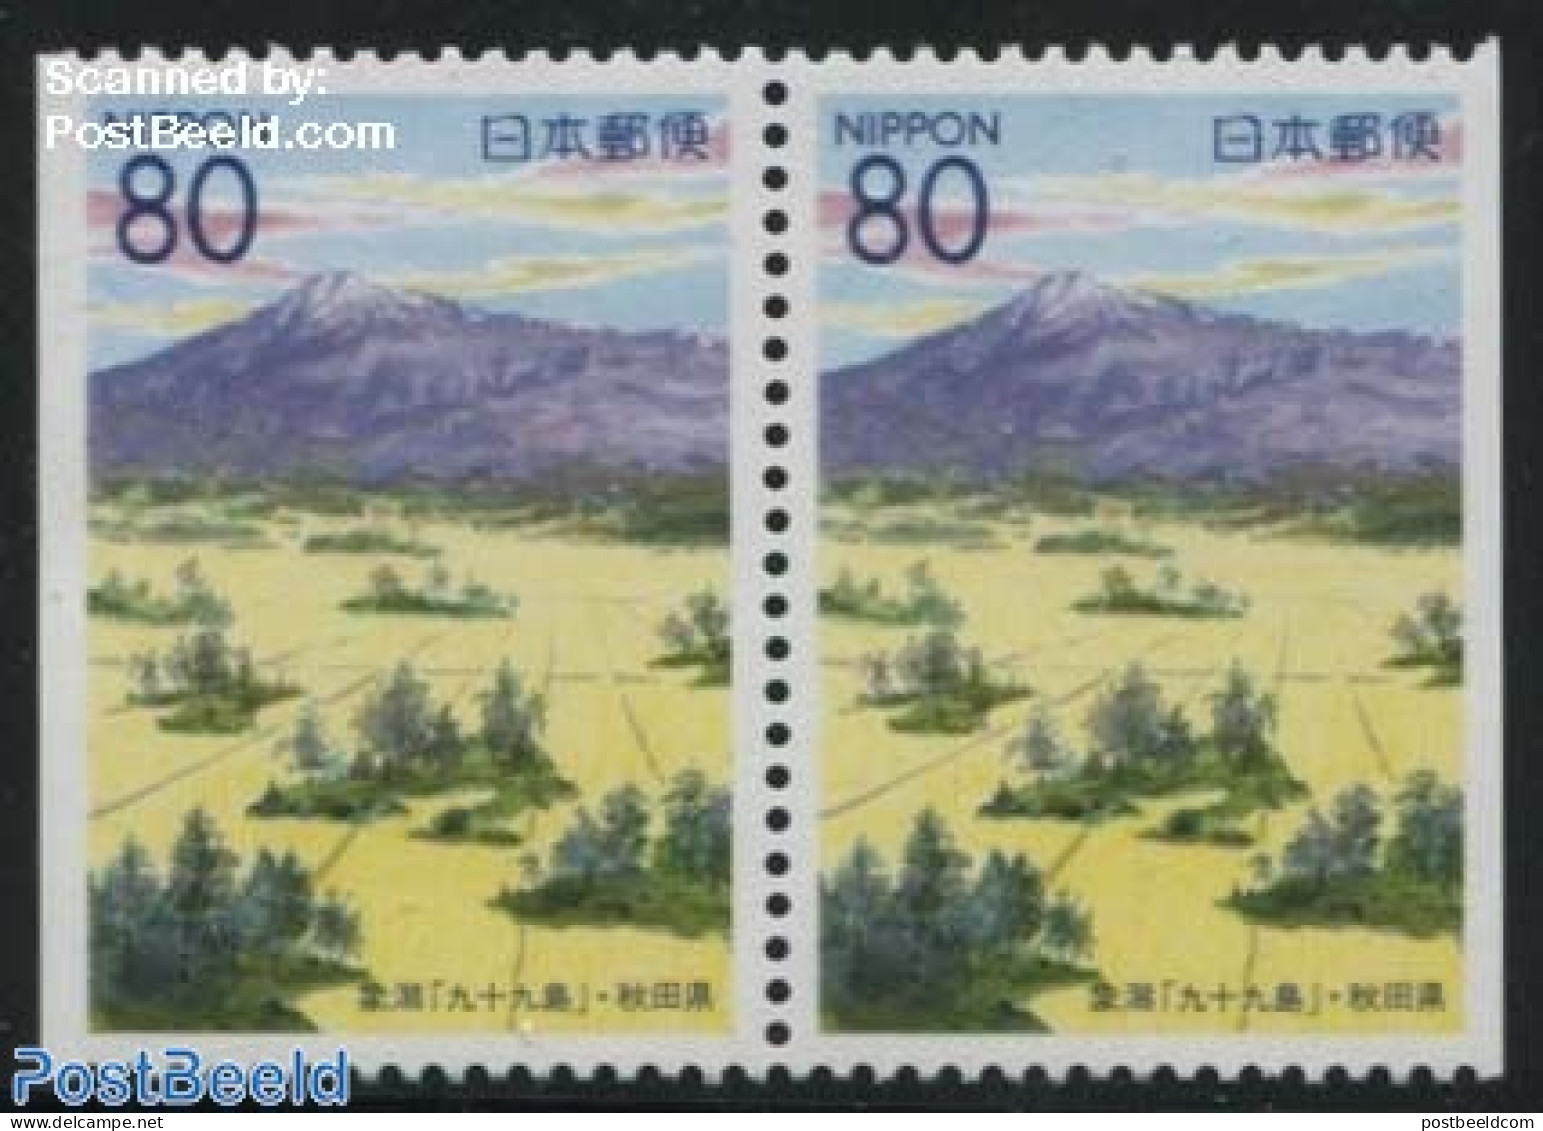 Japan 2000 Akita Booklet Pair, Mint NH - Unused Stamps